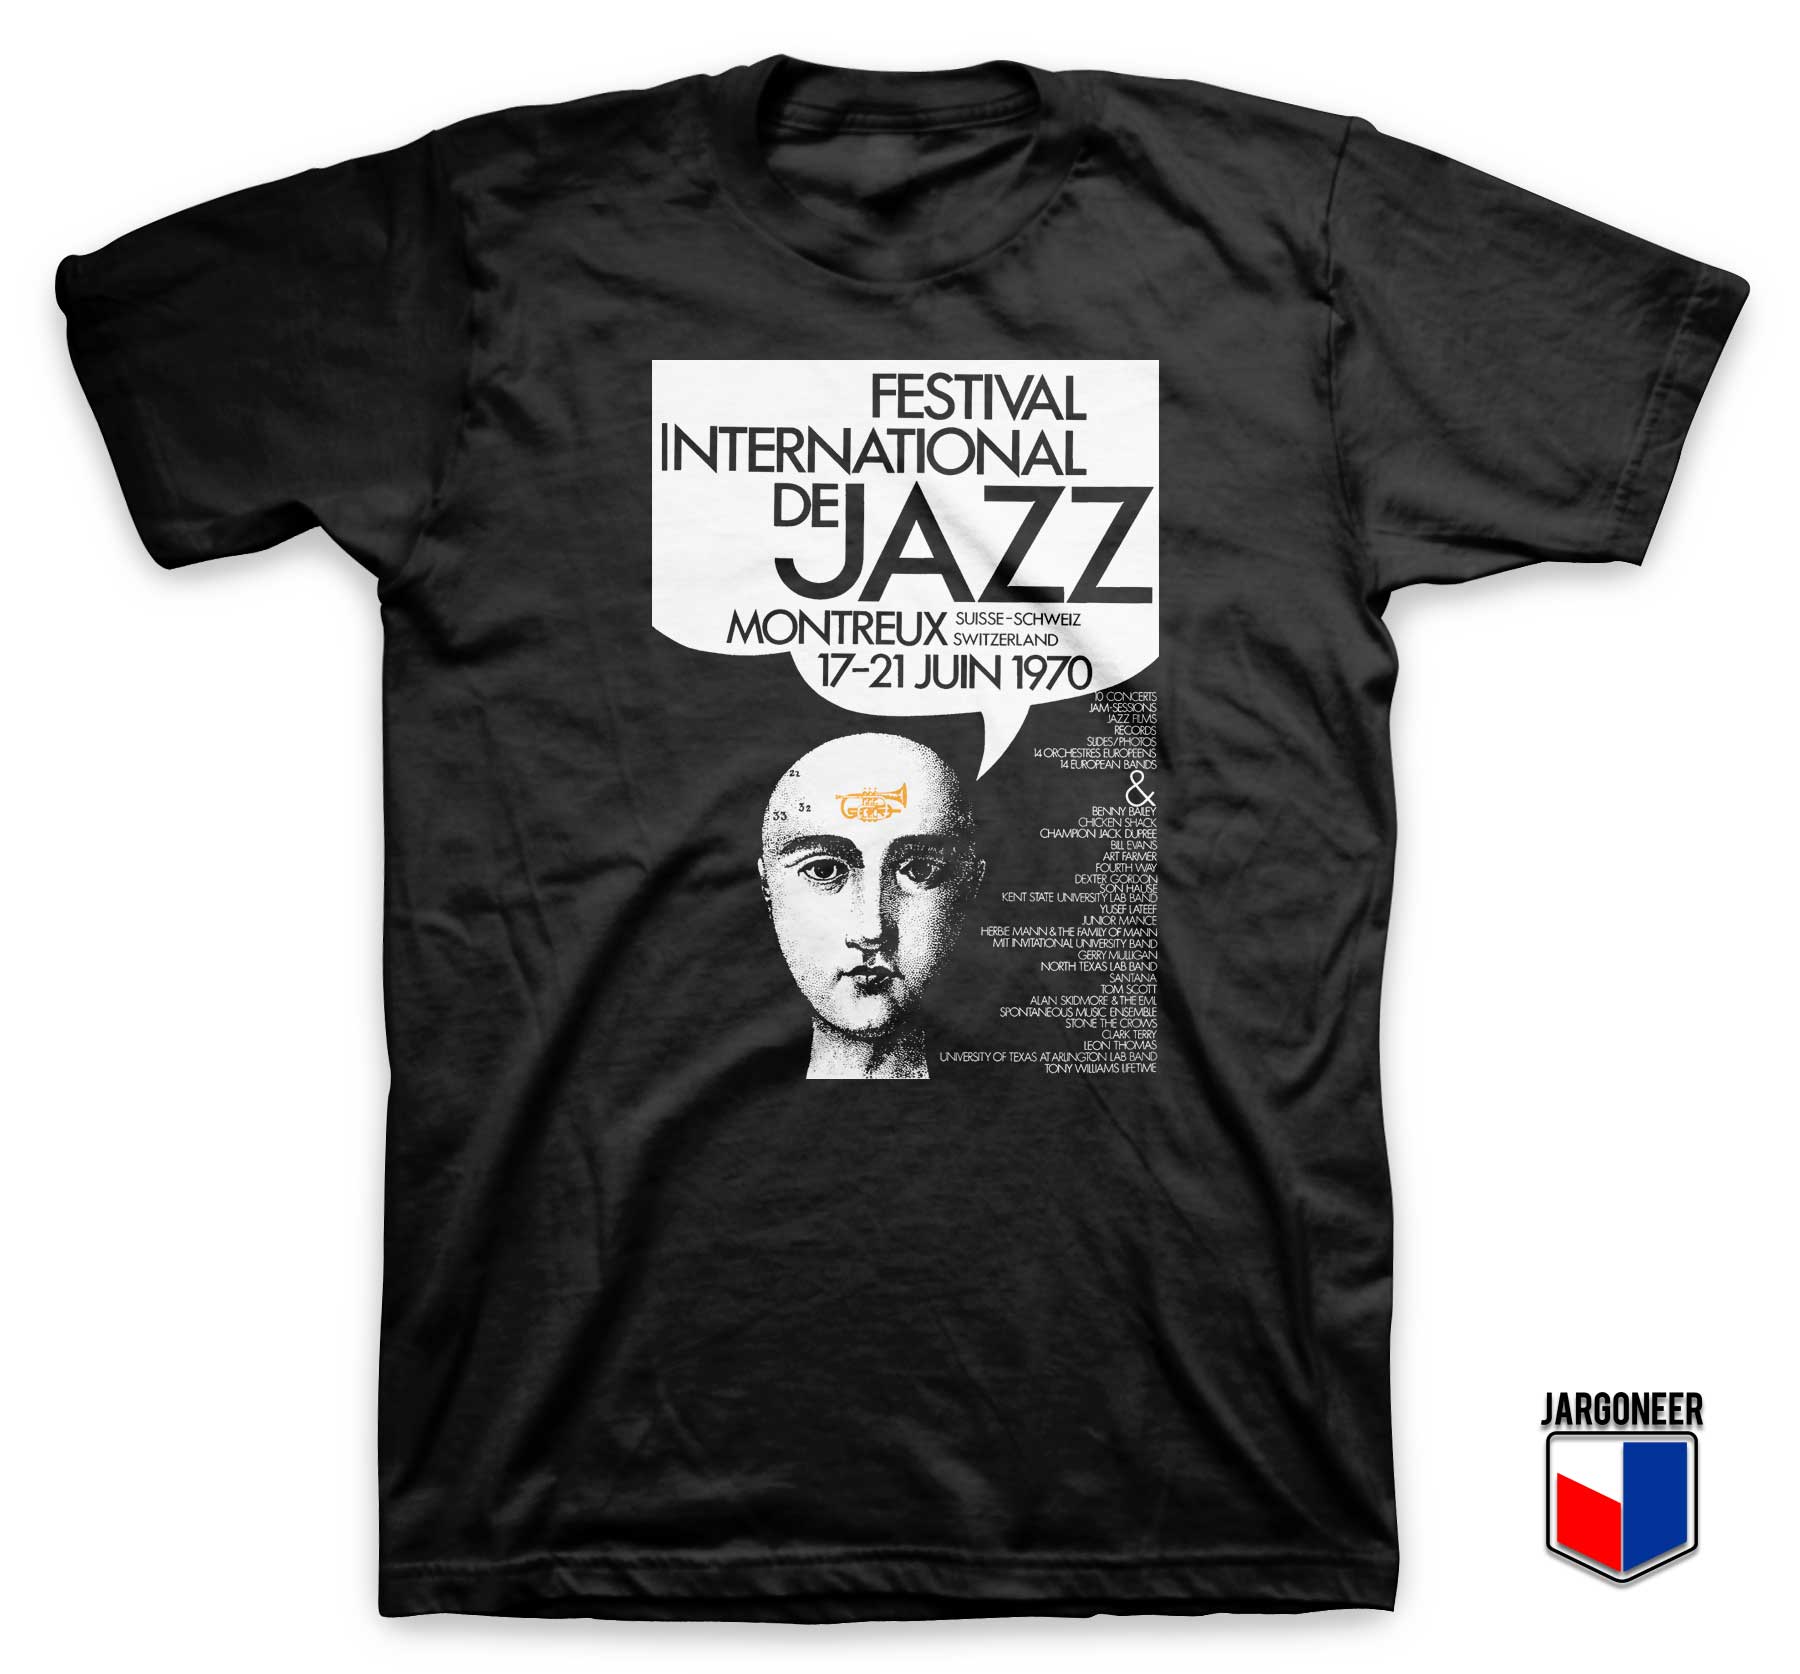 Montreux Jazz Festival 1970 T Shirt - Shop Unique Graphic Cool Shirt Designs